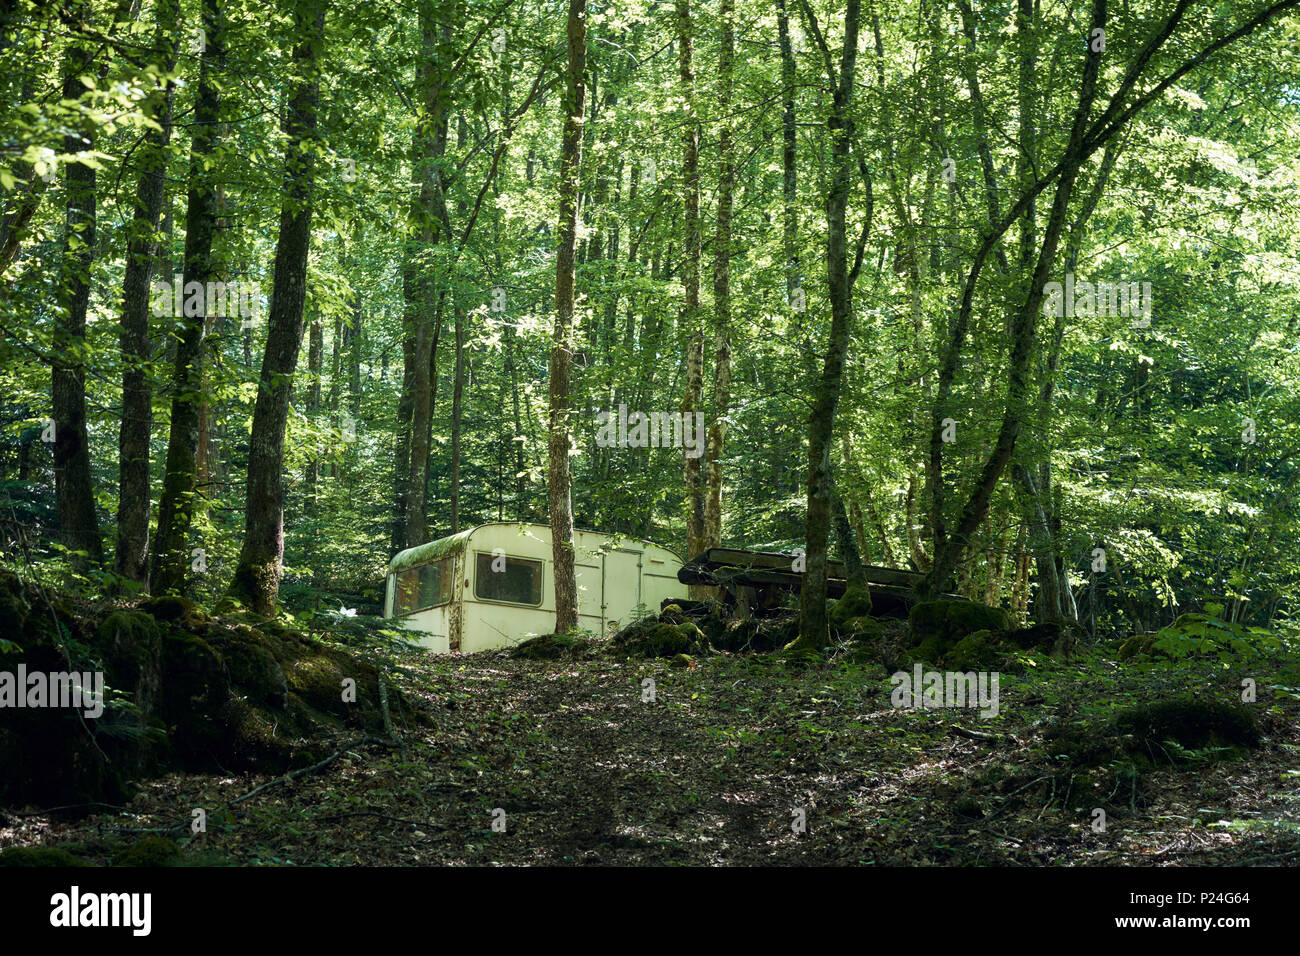 Caravanes dans une forêt avec de grands arbres et de la lumière du soleil Banque D'Images